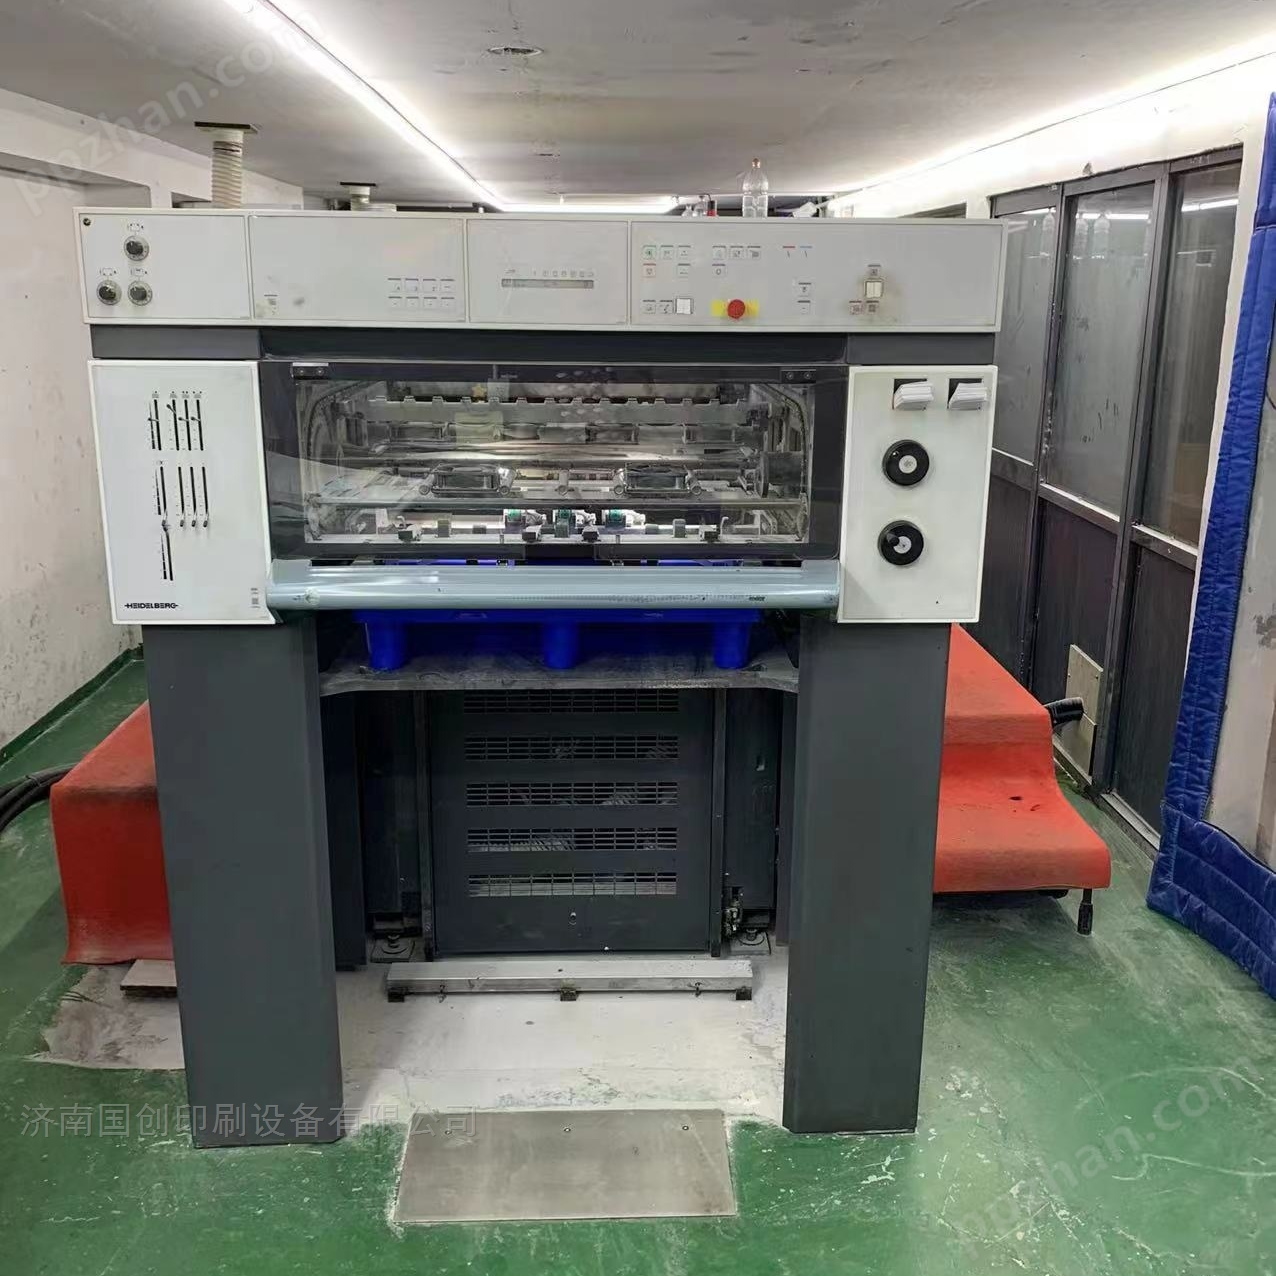 出售二手海德堡SM74-4高配印刷机